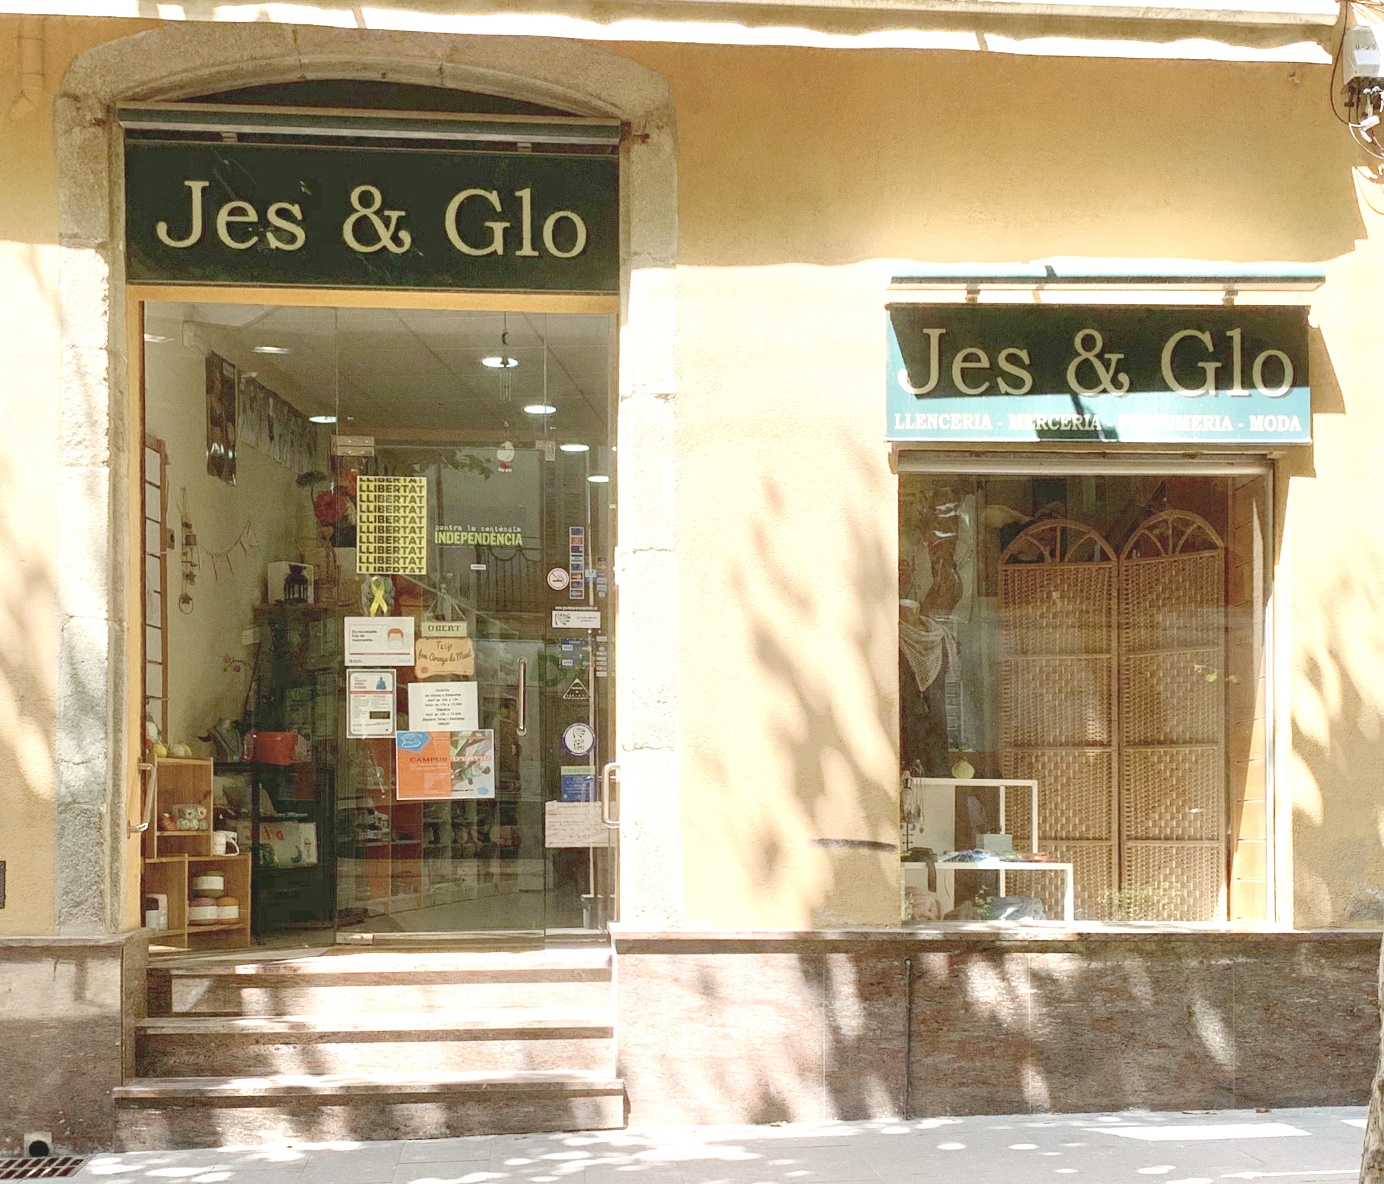 Jes & Glo